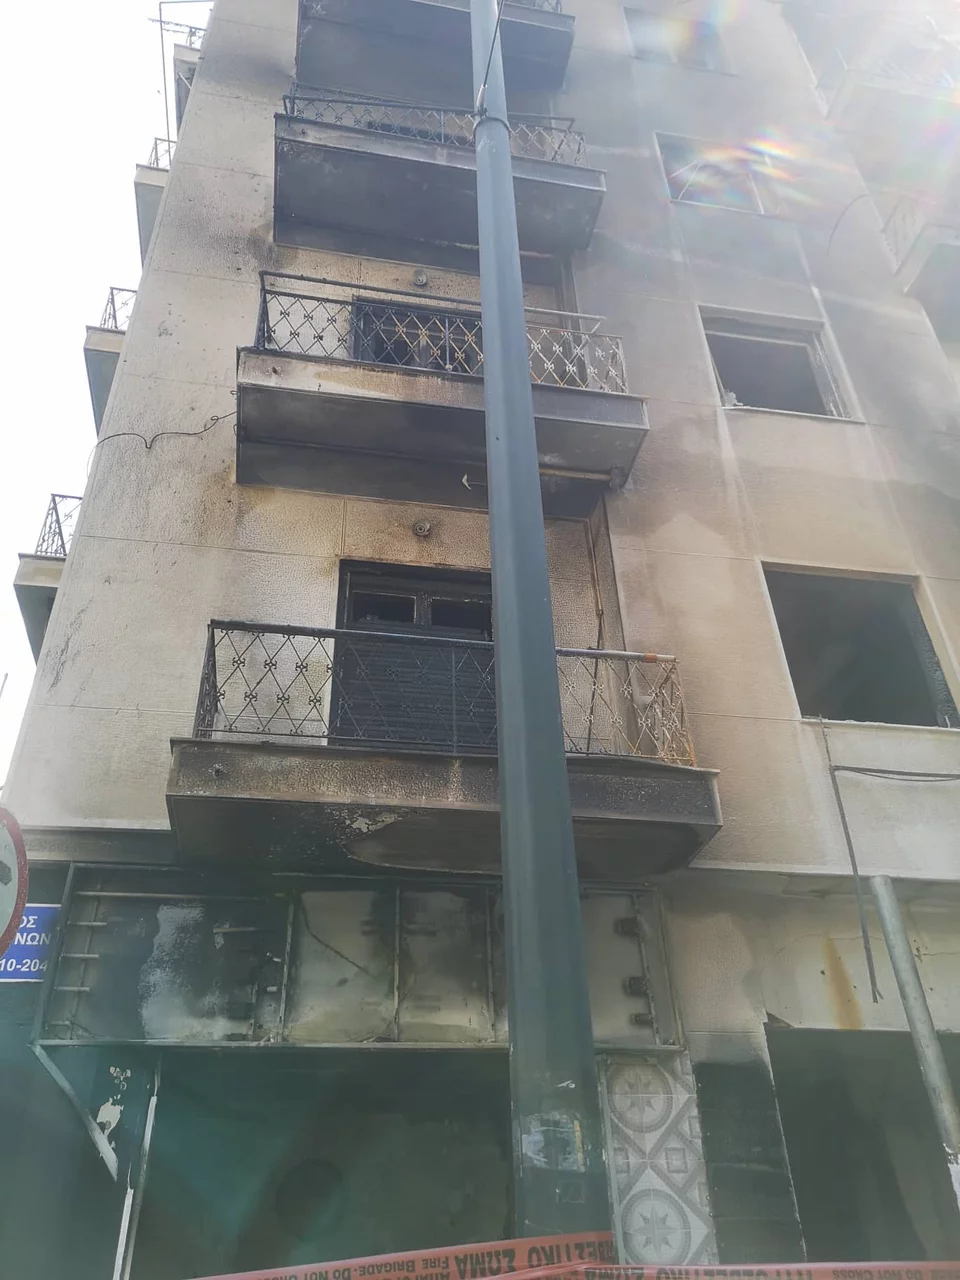 Acharnon: A doua zi după marele incendiu dintr-o clădire - Peisaj bombardat și imagini de distrugere